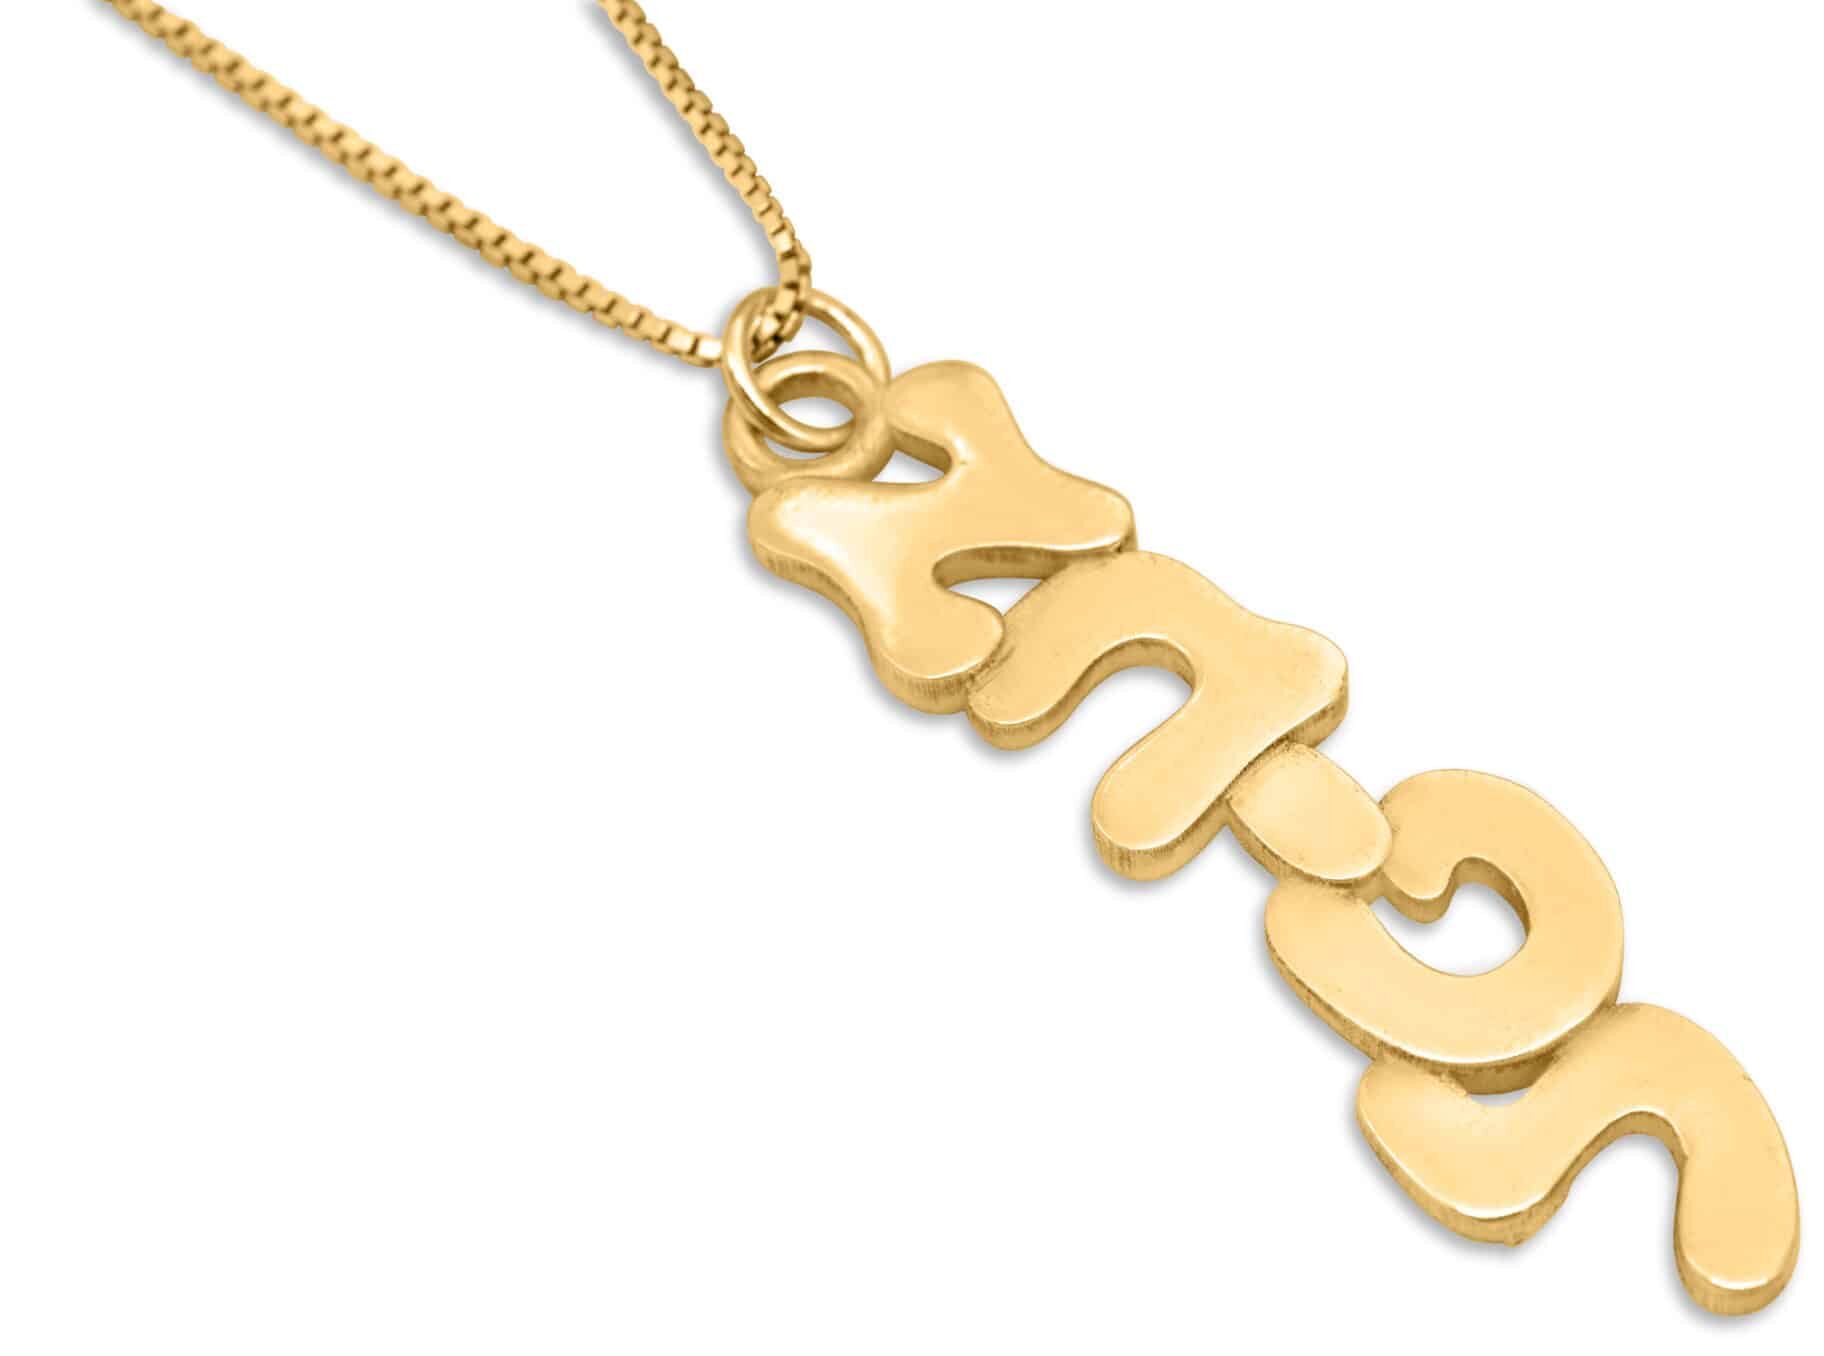 Vertical 3D 14K Gold Hebrew Name Necklace